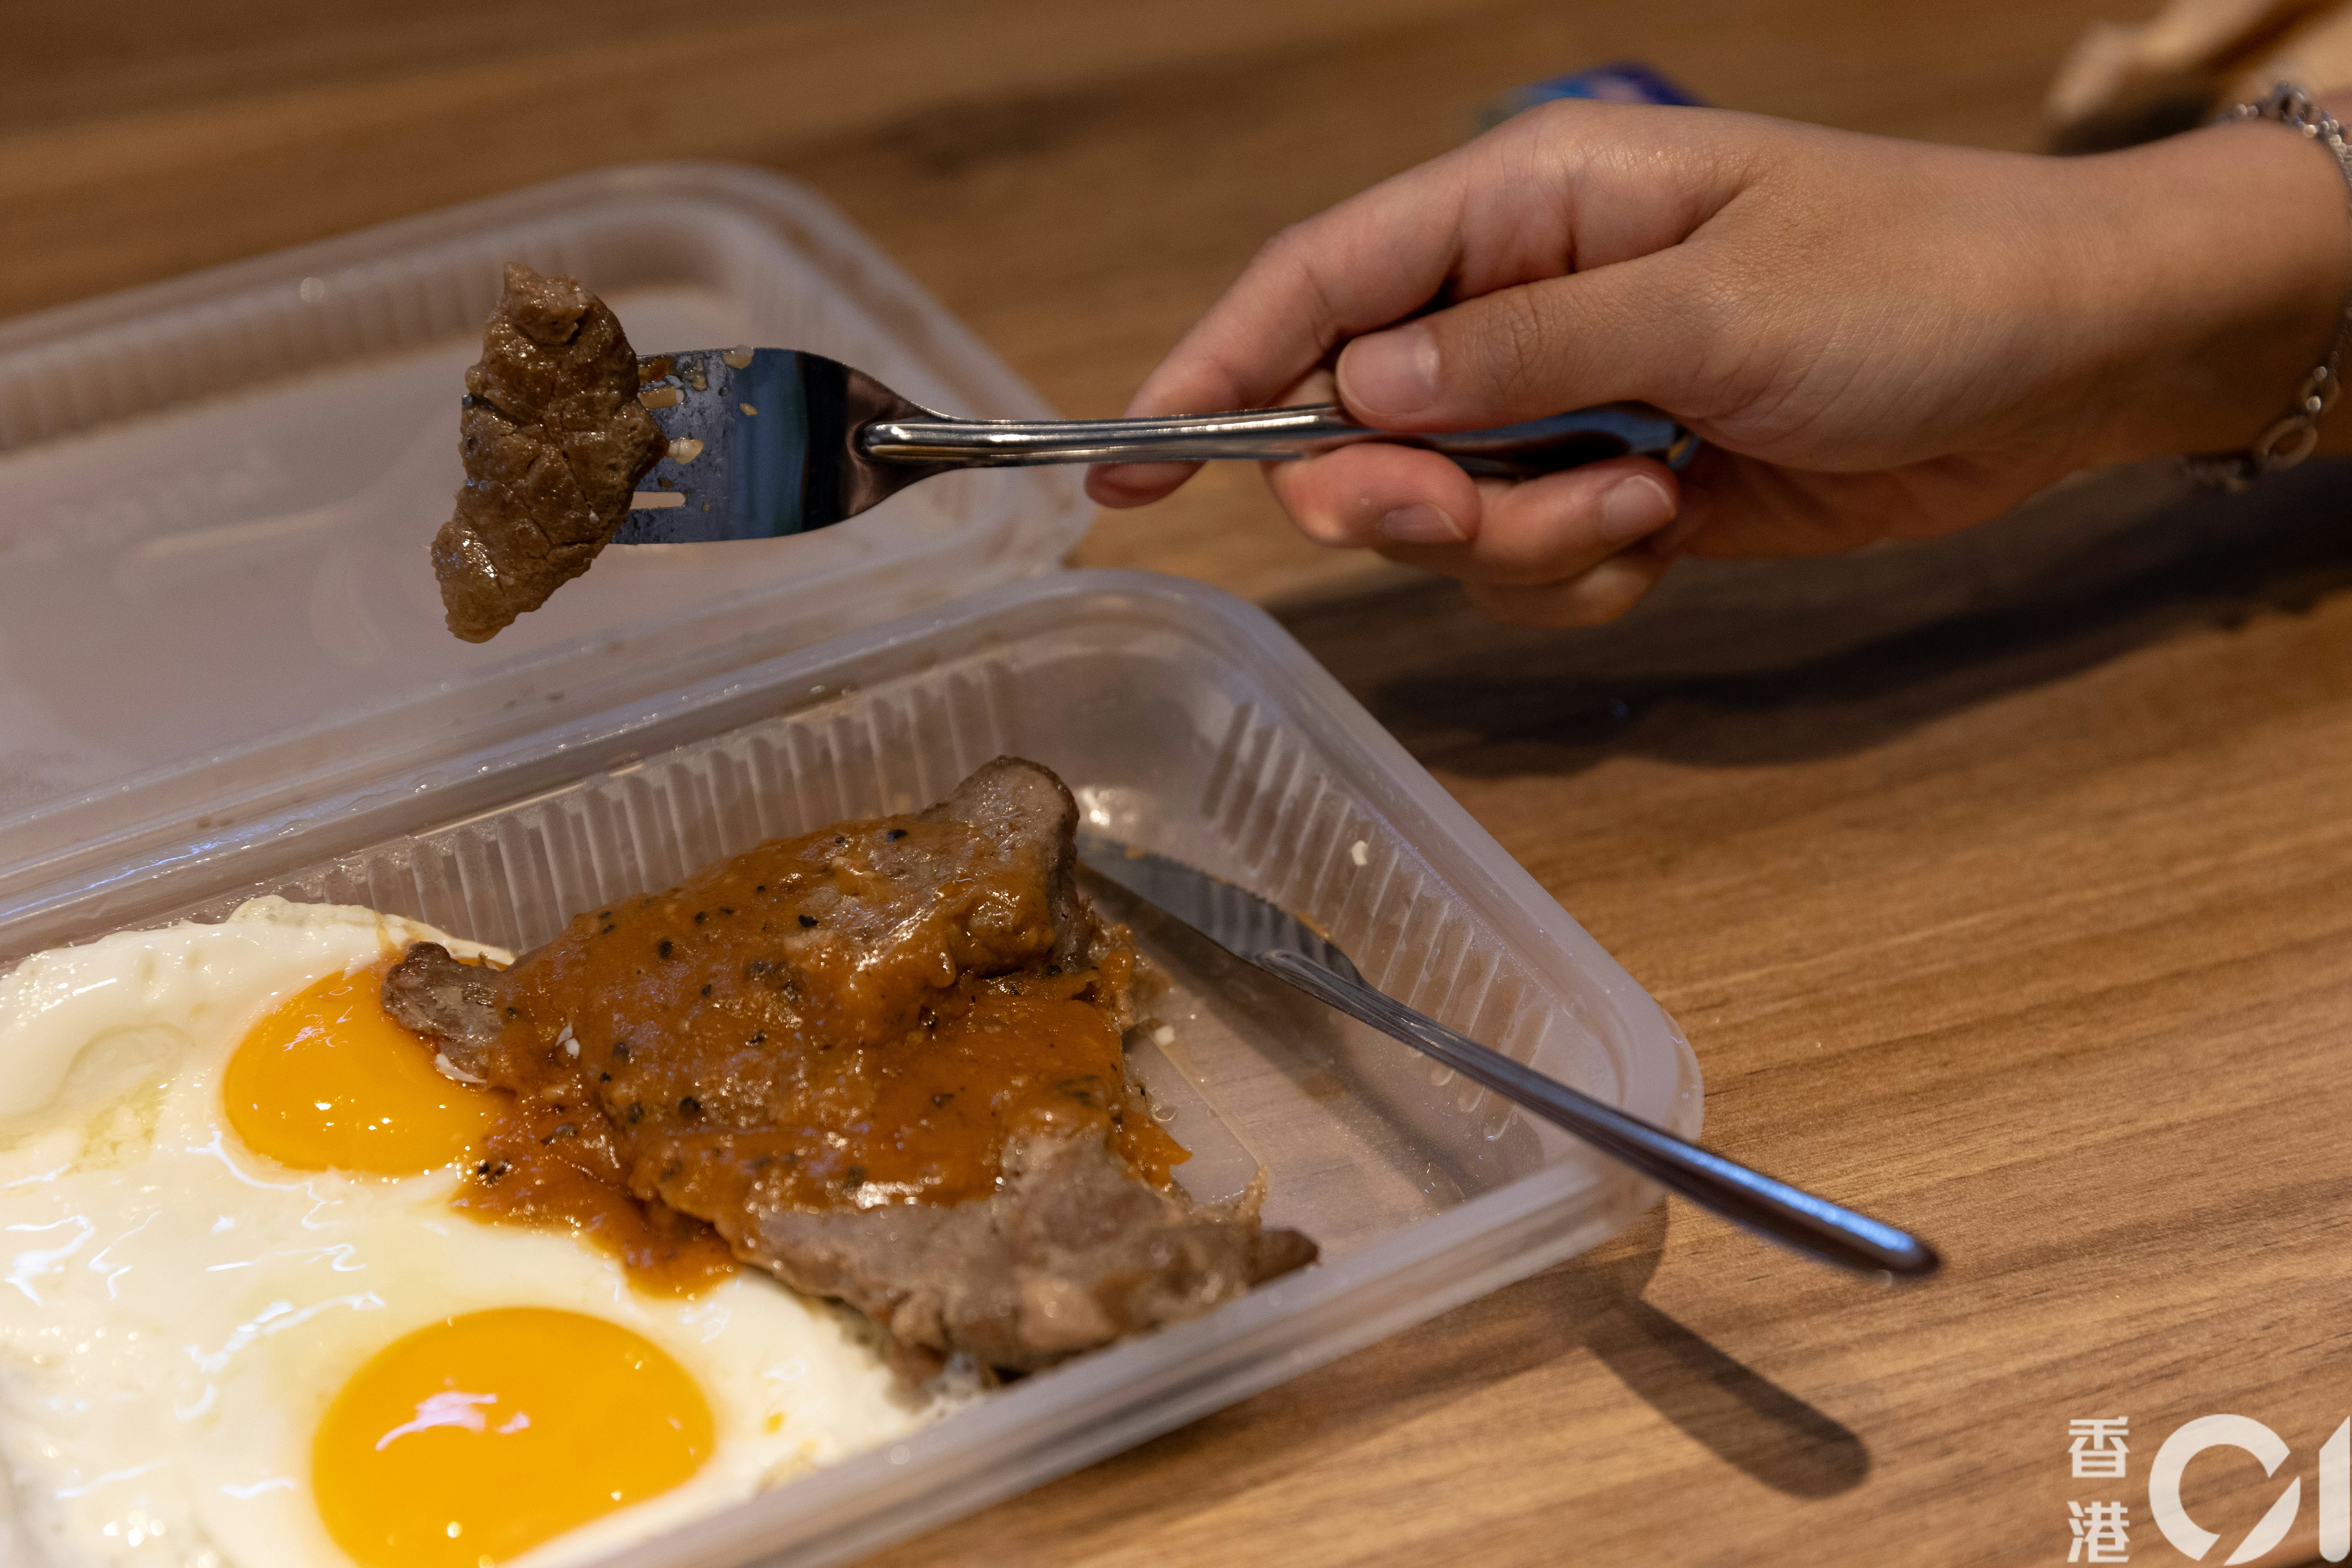 使用不锈钢餐具能切开牛扒，不过其刀柄较为轻薄，与堂食餐具相比，使用时较为不舒适。(夏家朗摄)